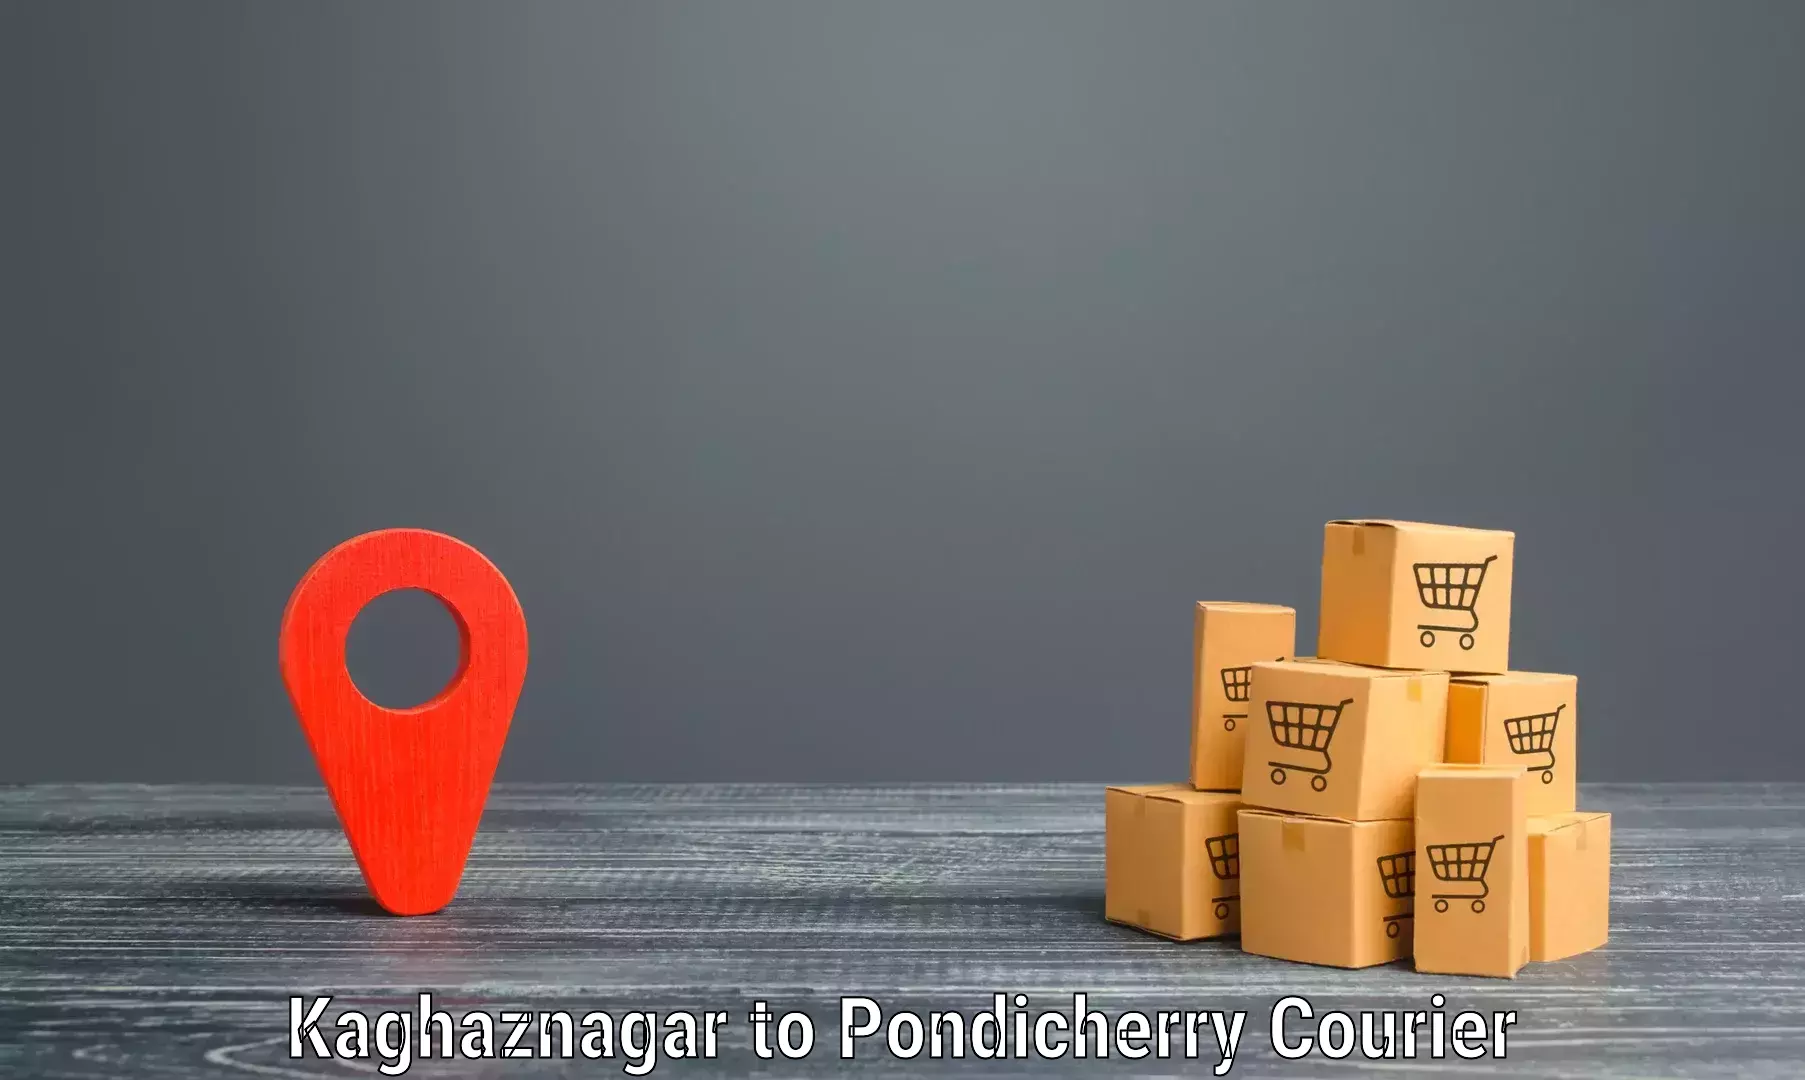 Nationwide parcel services Kaghaznagar to Pondicherry